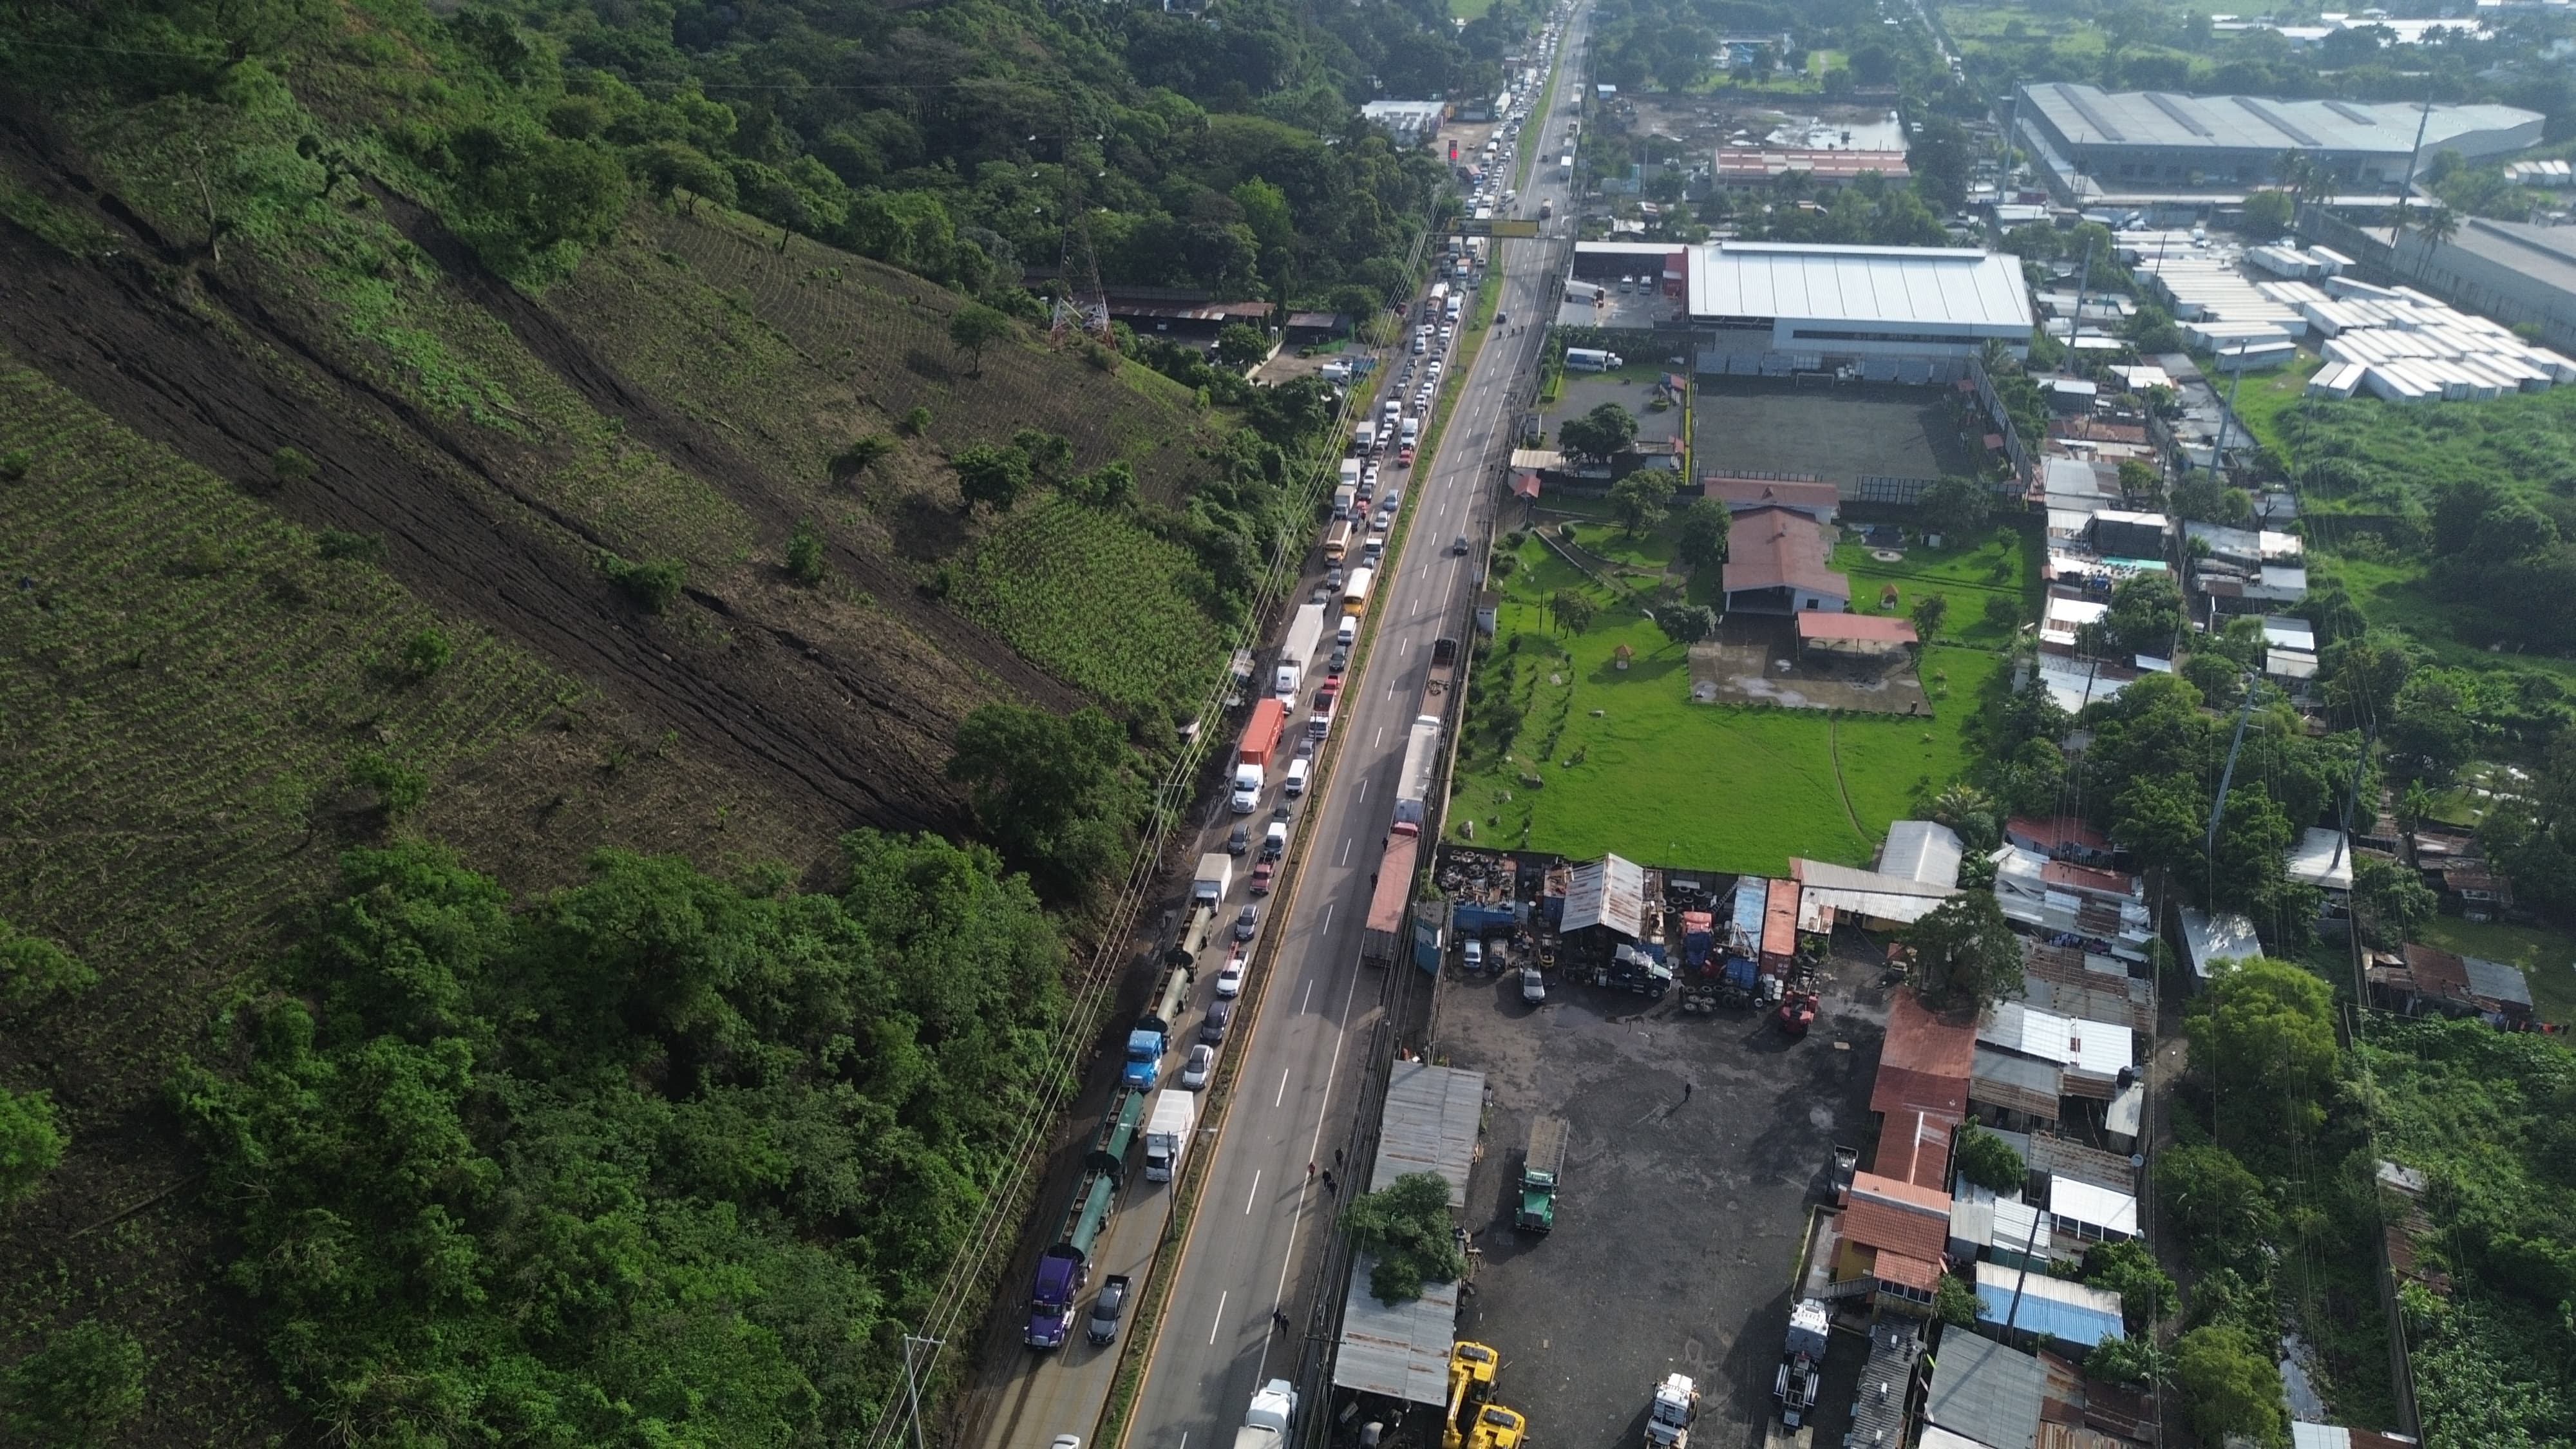 Con la habilitación de pasos alternos, las autoridades de Palín esperar minimizar el impacto provocado por el socavón en el km 44 de la autopista – Palín – Escuintla. (Foto Prensa Libre: ) 